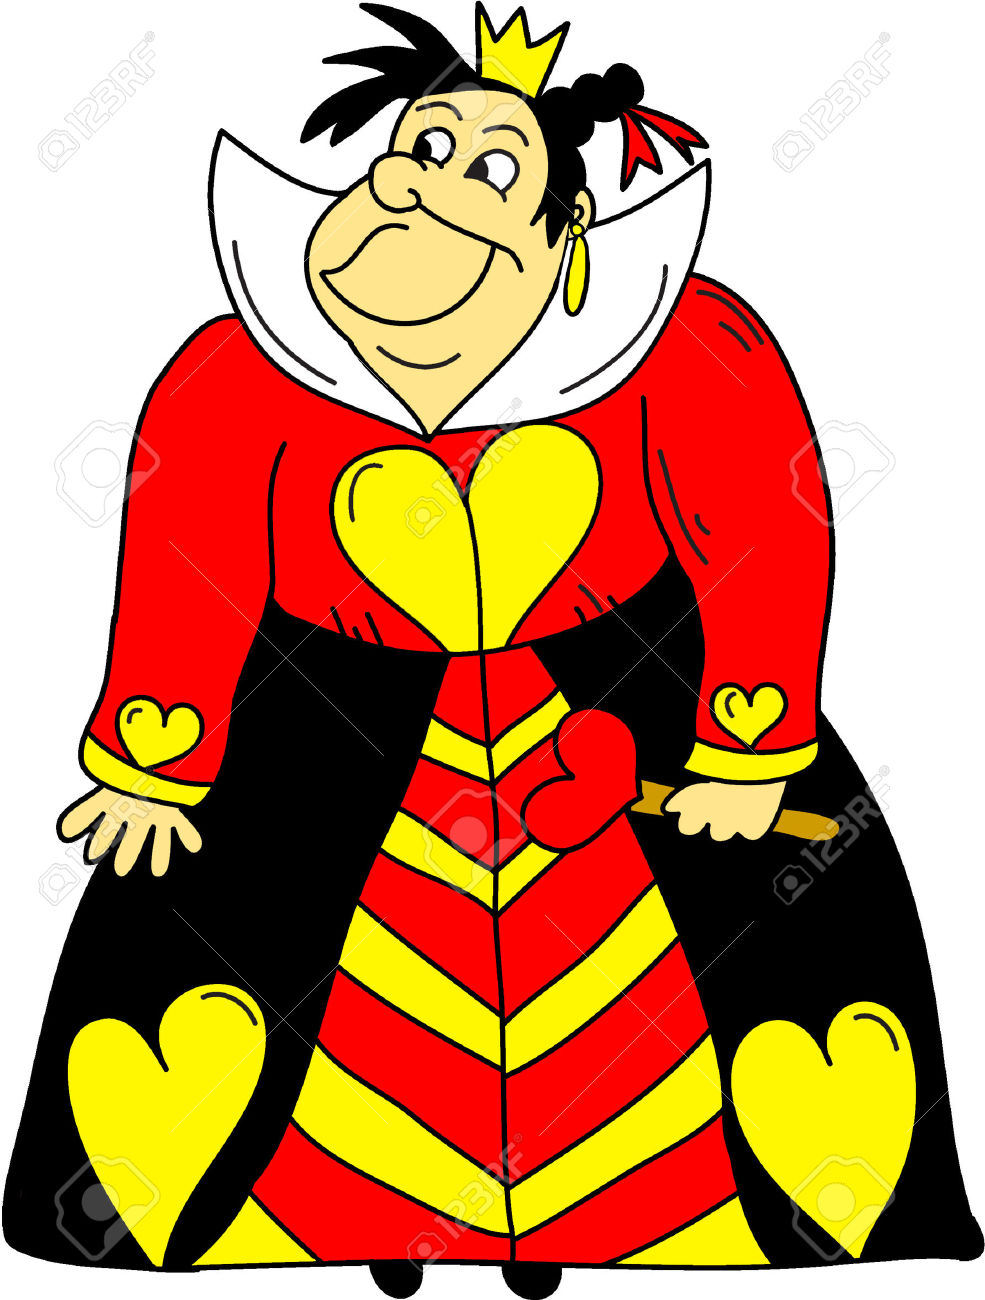 The Queen Of Hearts Clipart- Alice In Wonderland Cartoons Stock Vector - 39551568